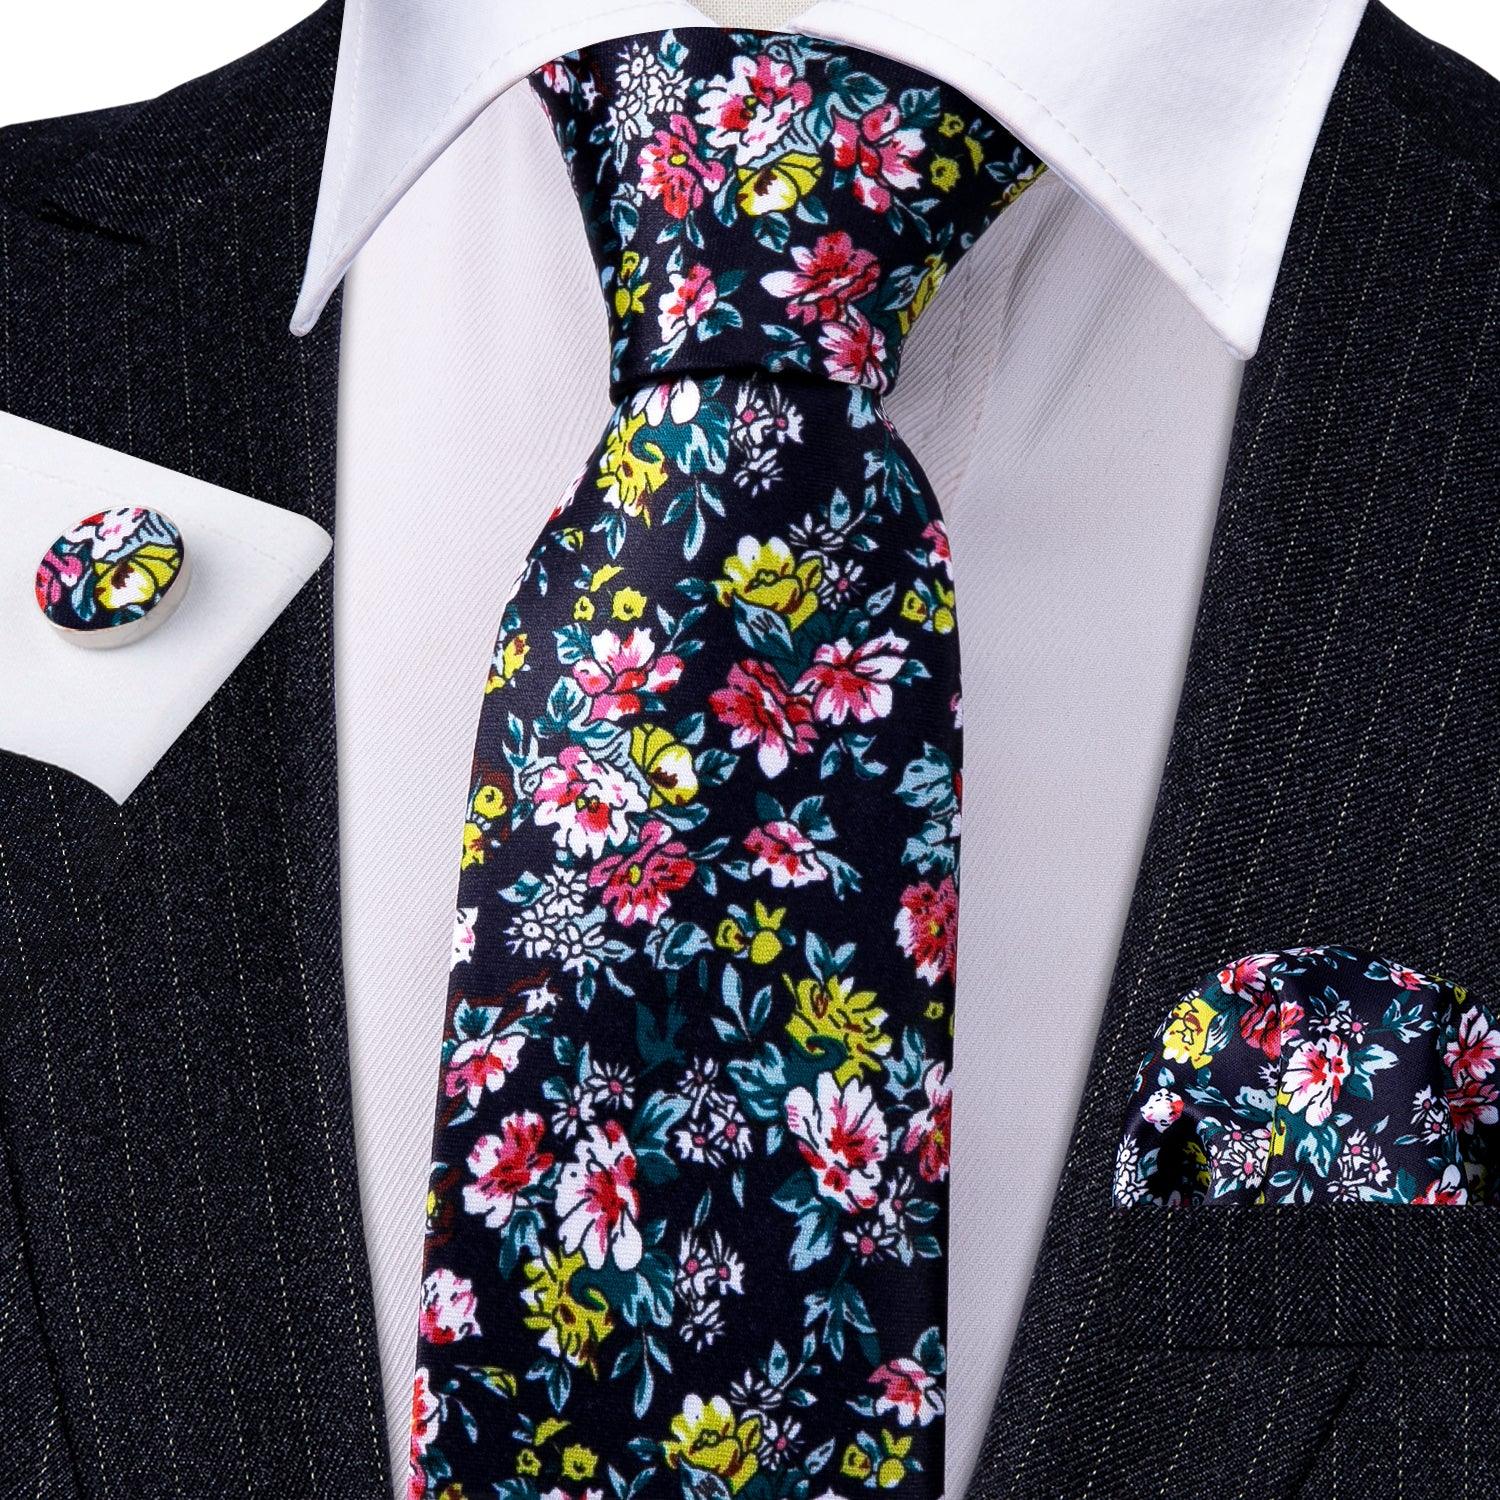 Black Print Floral Silk Tie Pocket Square Cufflink Set - STYLETIE